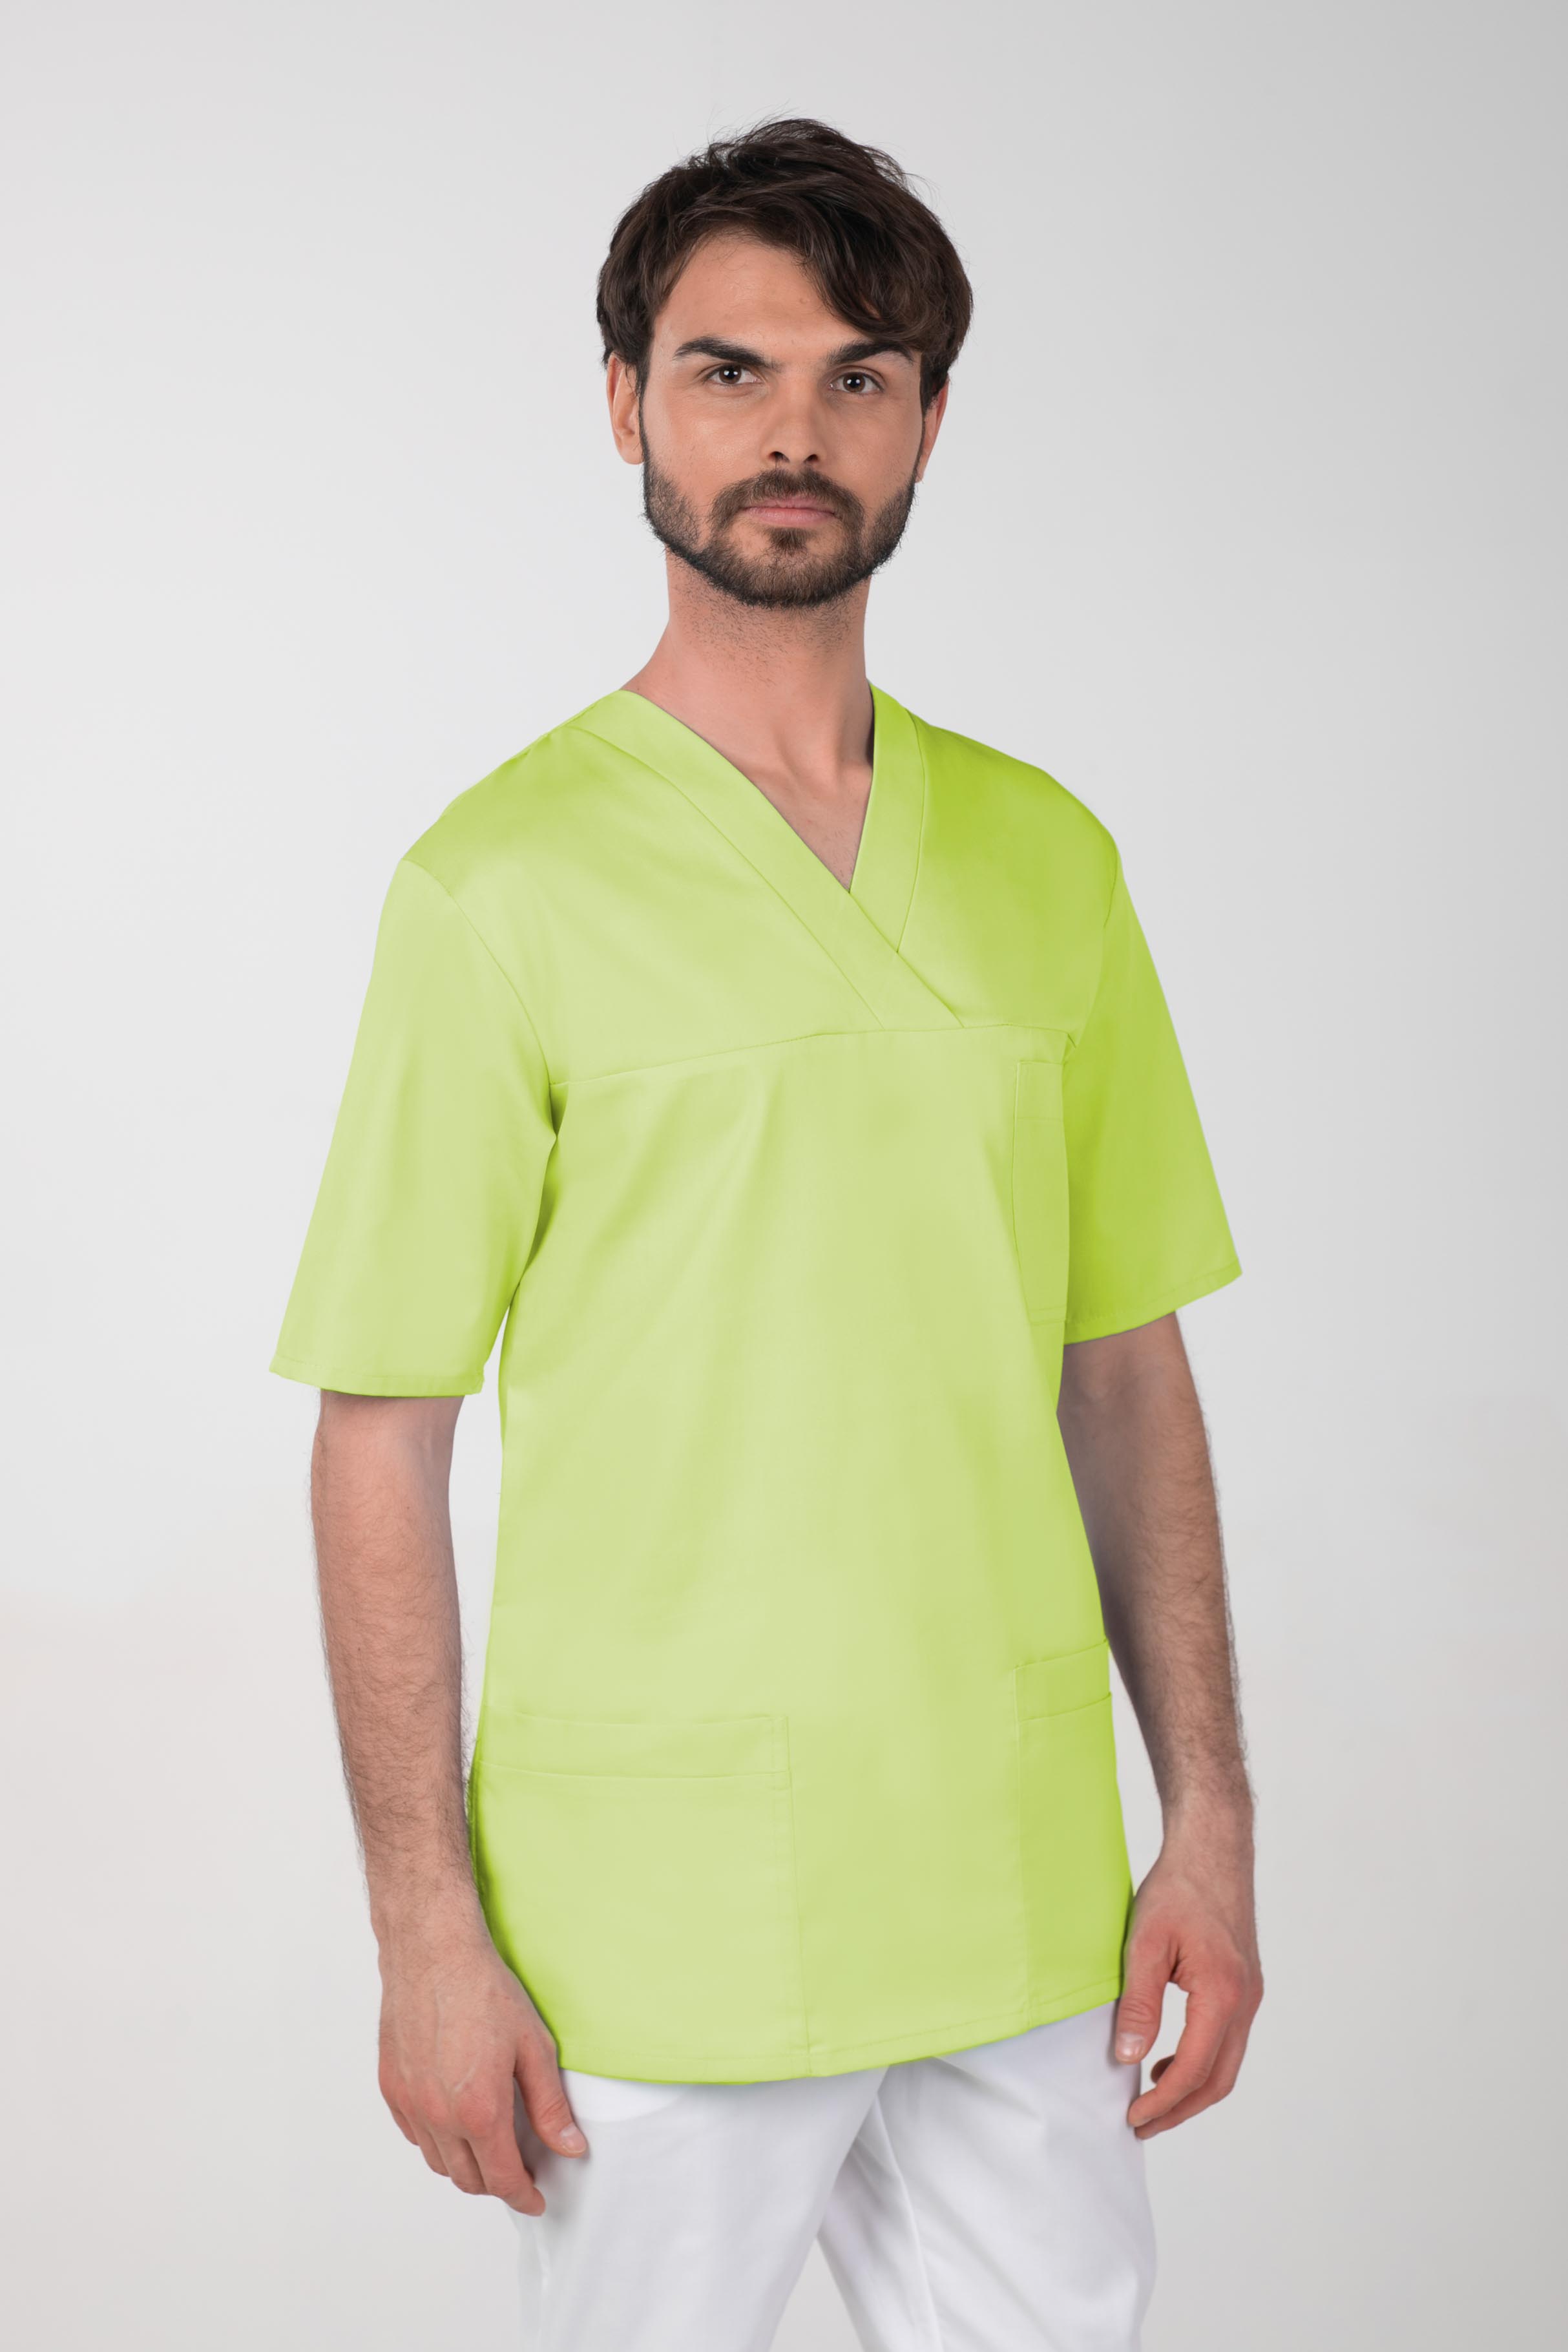 Pánská barevná zdravotnická košile M-074C, limetková